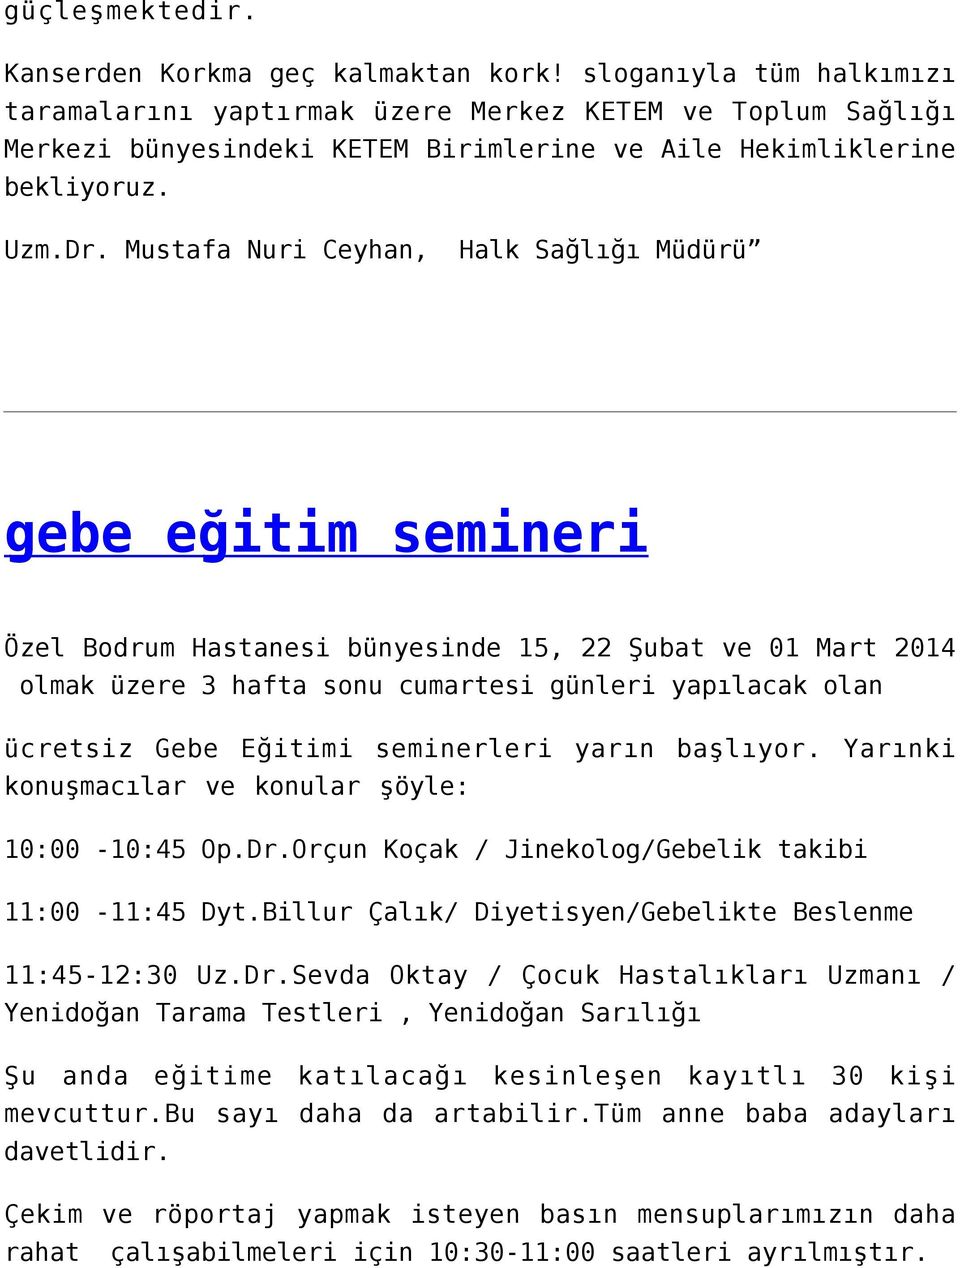 Mustafa Nuri Ceyhan, Halk Sağlığı Müdürü gebe eğitim semineri Özel Bodrum Hastanesi bünyesinde 15, 22 Şubat ve 01 Mart 2014 olmak üzere 3 hafta sonu cumartesi günleri yapılacak olan ücretsiz Gebe